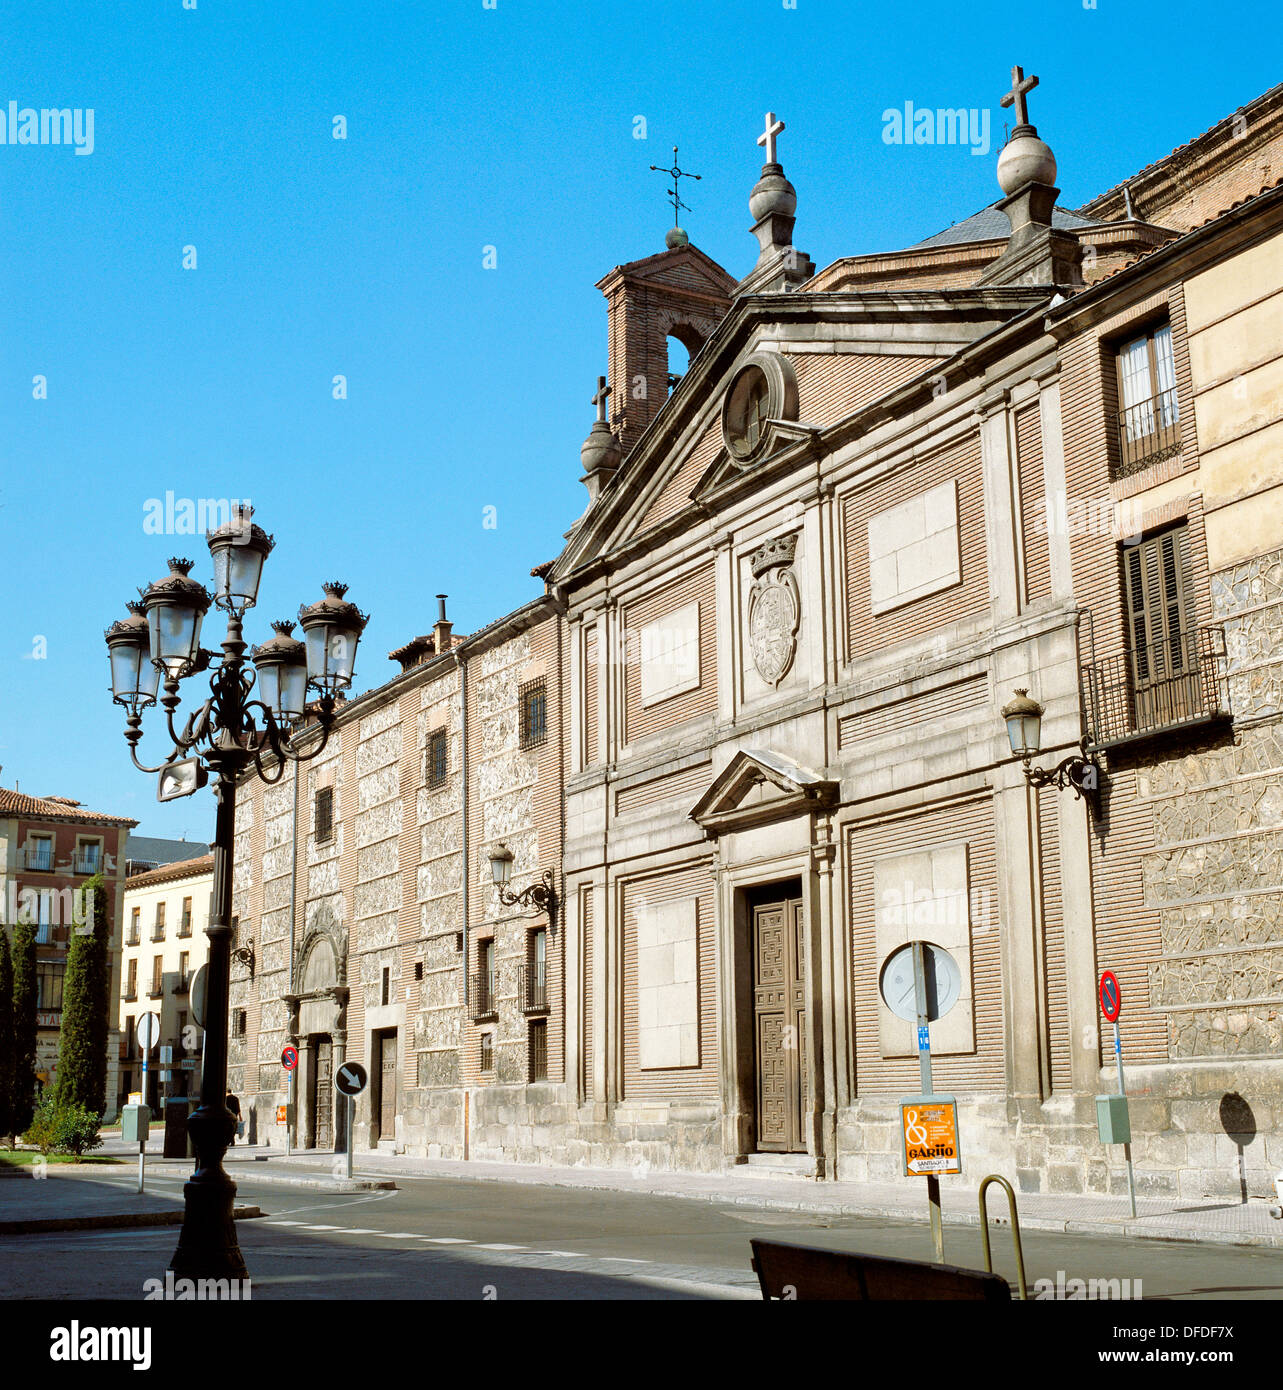 Monasterio de las Descalzas Reales, Madrid. Spain Stock Photo - Alamy